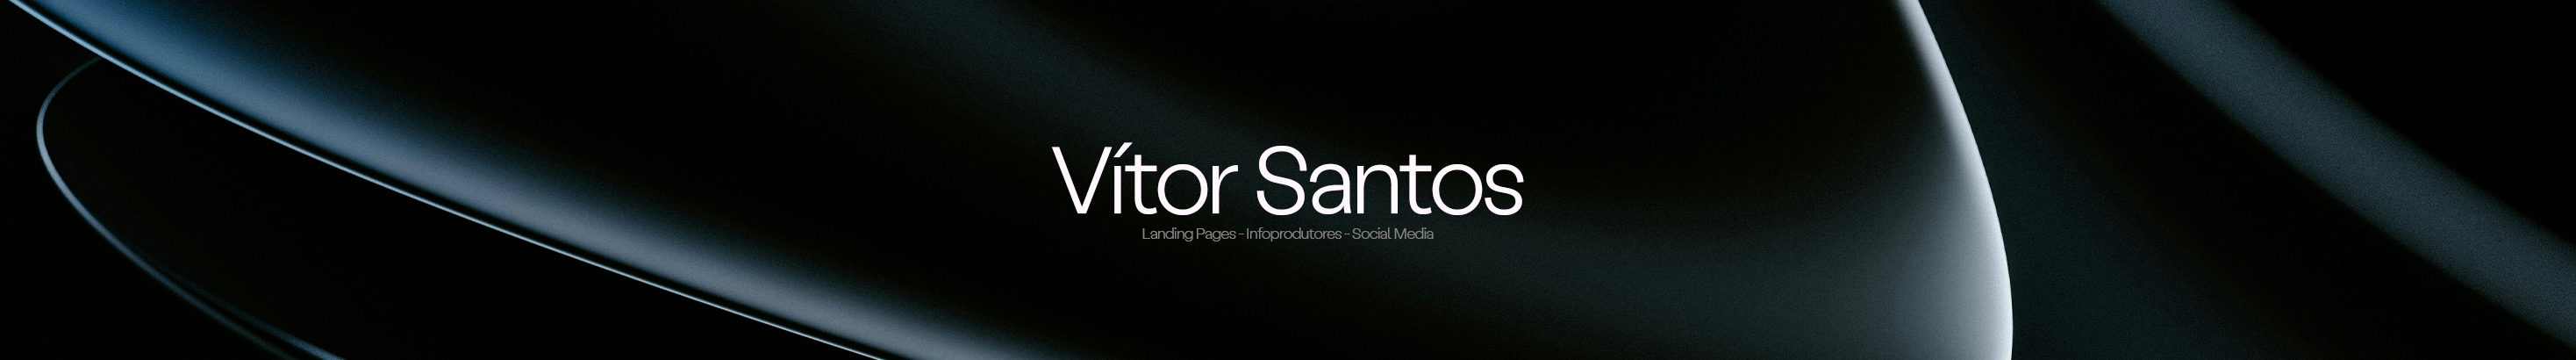 Vítor Santos 的個人檔案橫幅